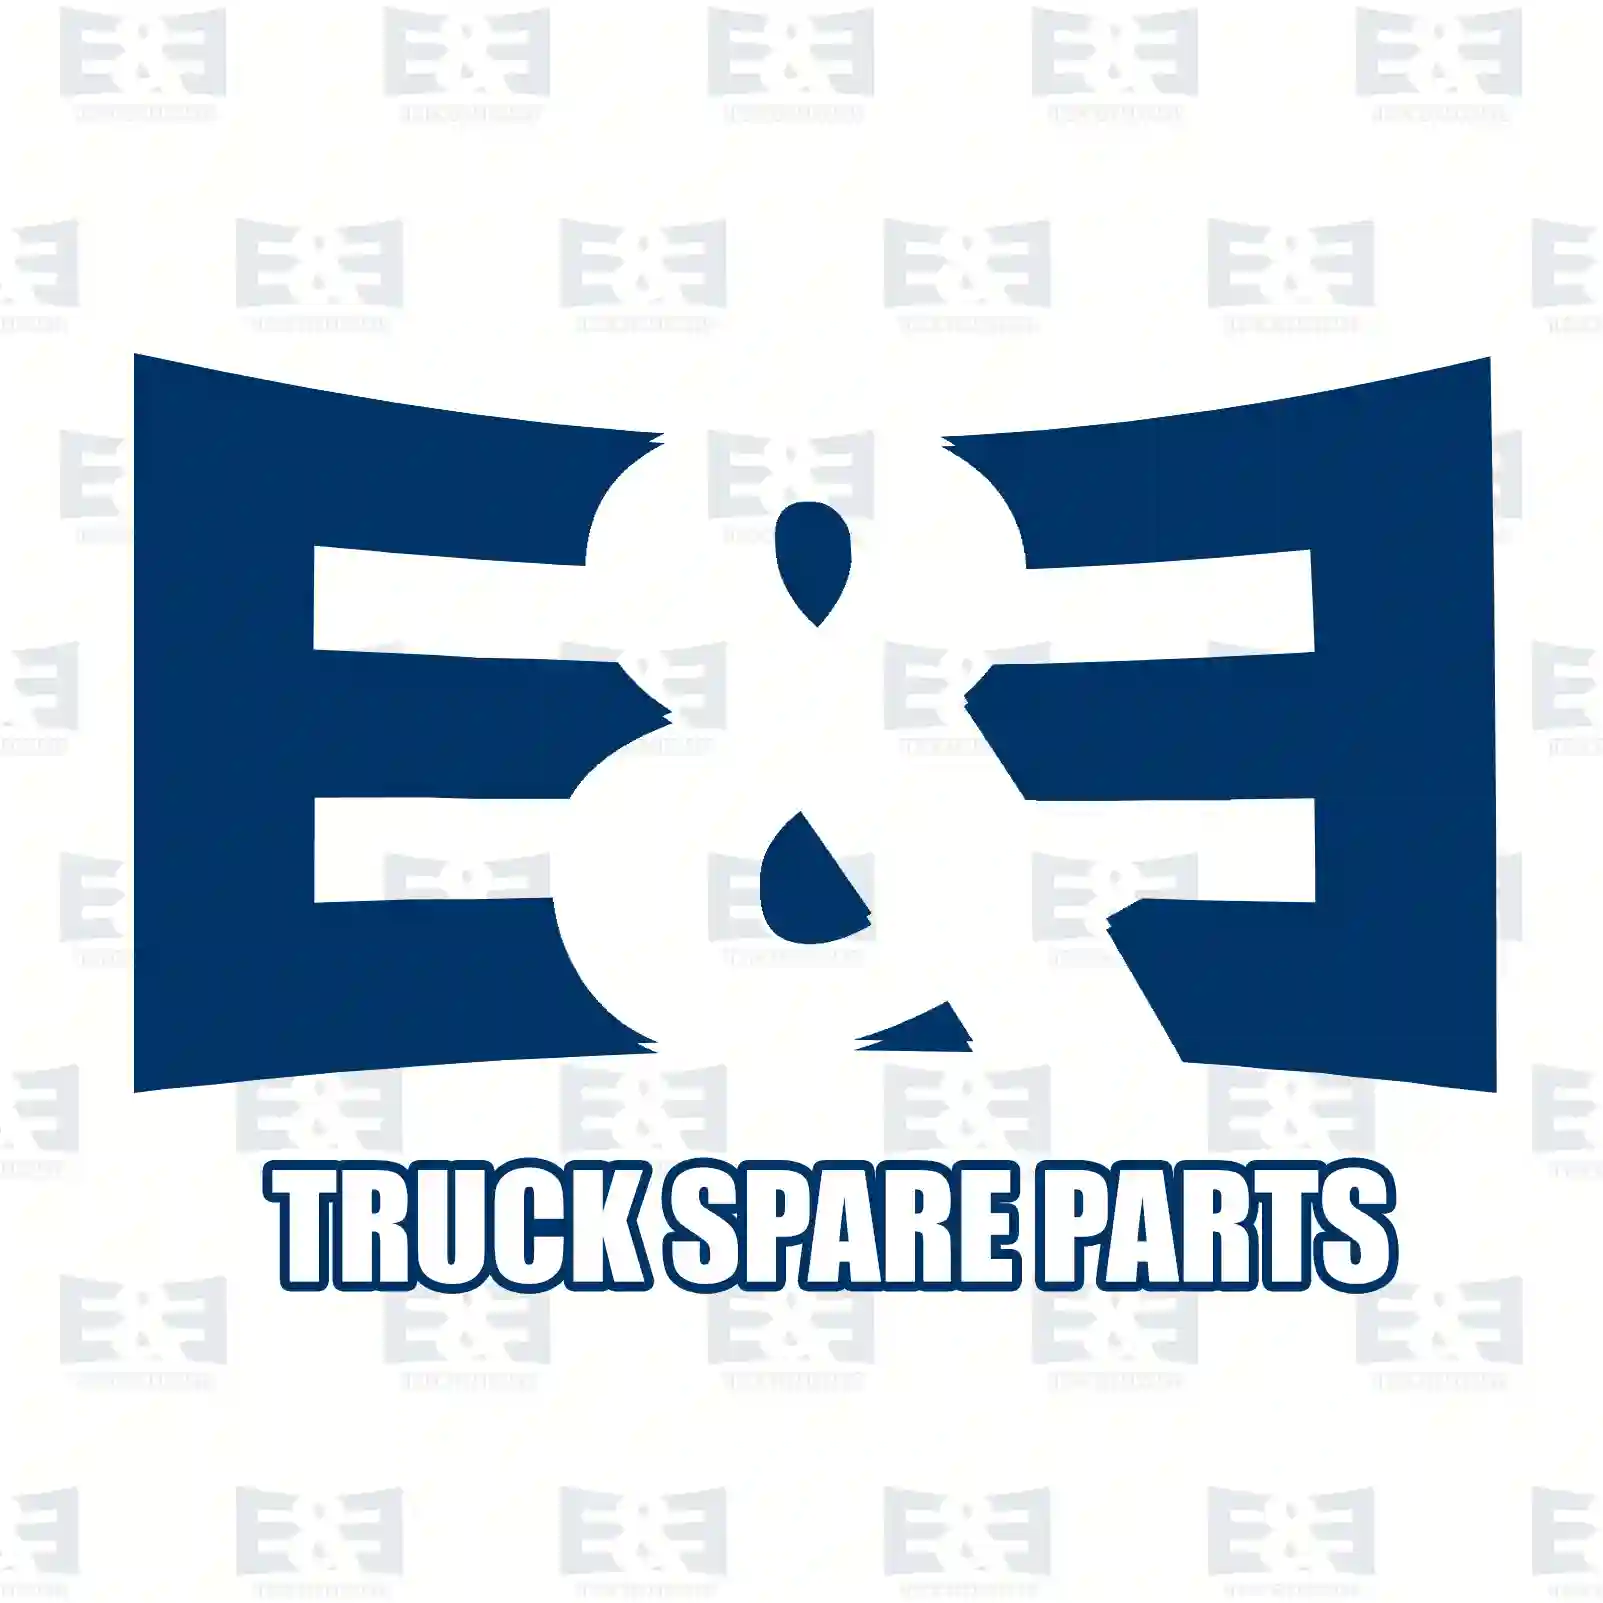 Cabin shock absorber, 2E2275499, 504080441, 504115 ||  2E2275499 E&E Truck Spare Parts | Truck Spare Parts, Auotomotive Spare Parts Cabin shock absorber, 2E2275499, 504080441, 504115 ||  2E2275499 E&E Truck Spare Parts | Truck Spare Parts, Auotomotive Spare Parts